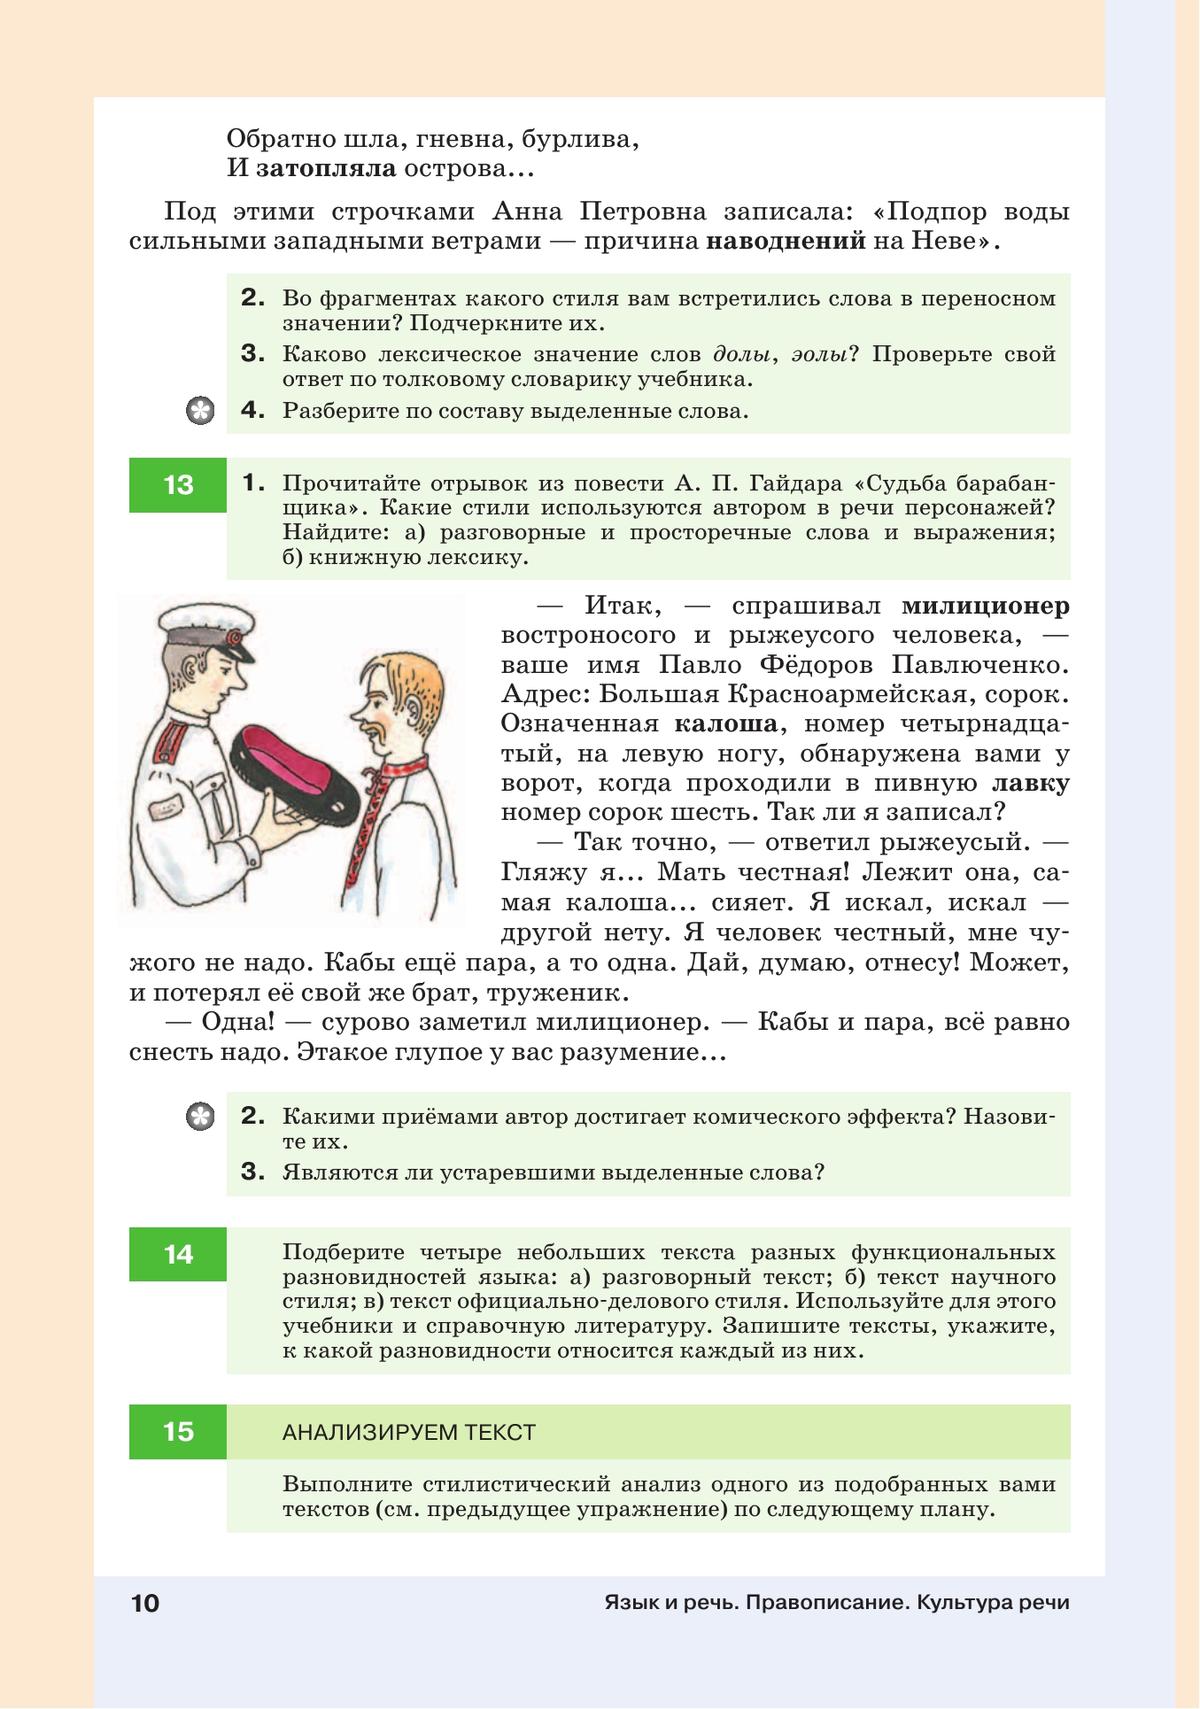 Русский язык. 7 класс. Учебник 6